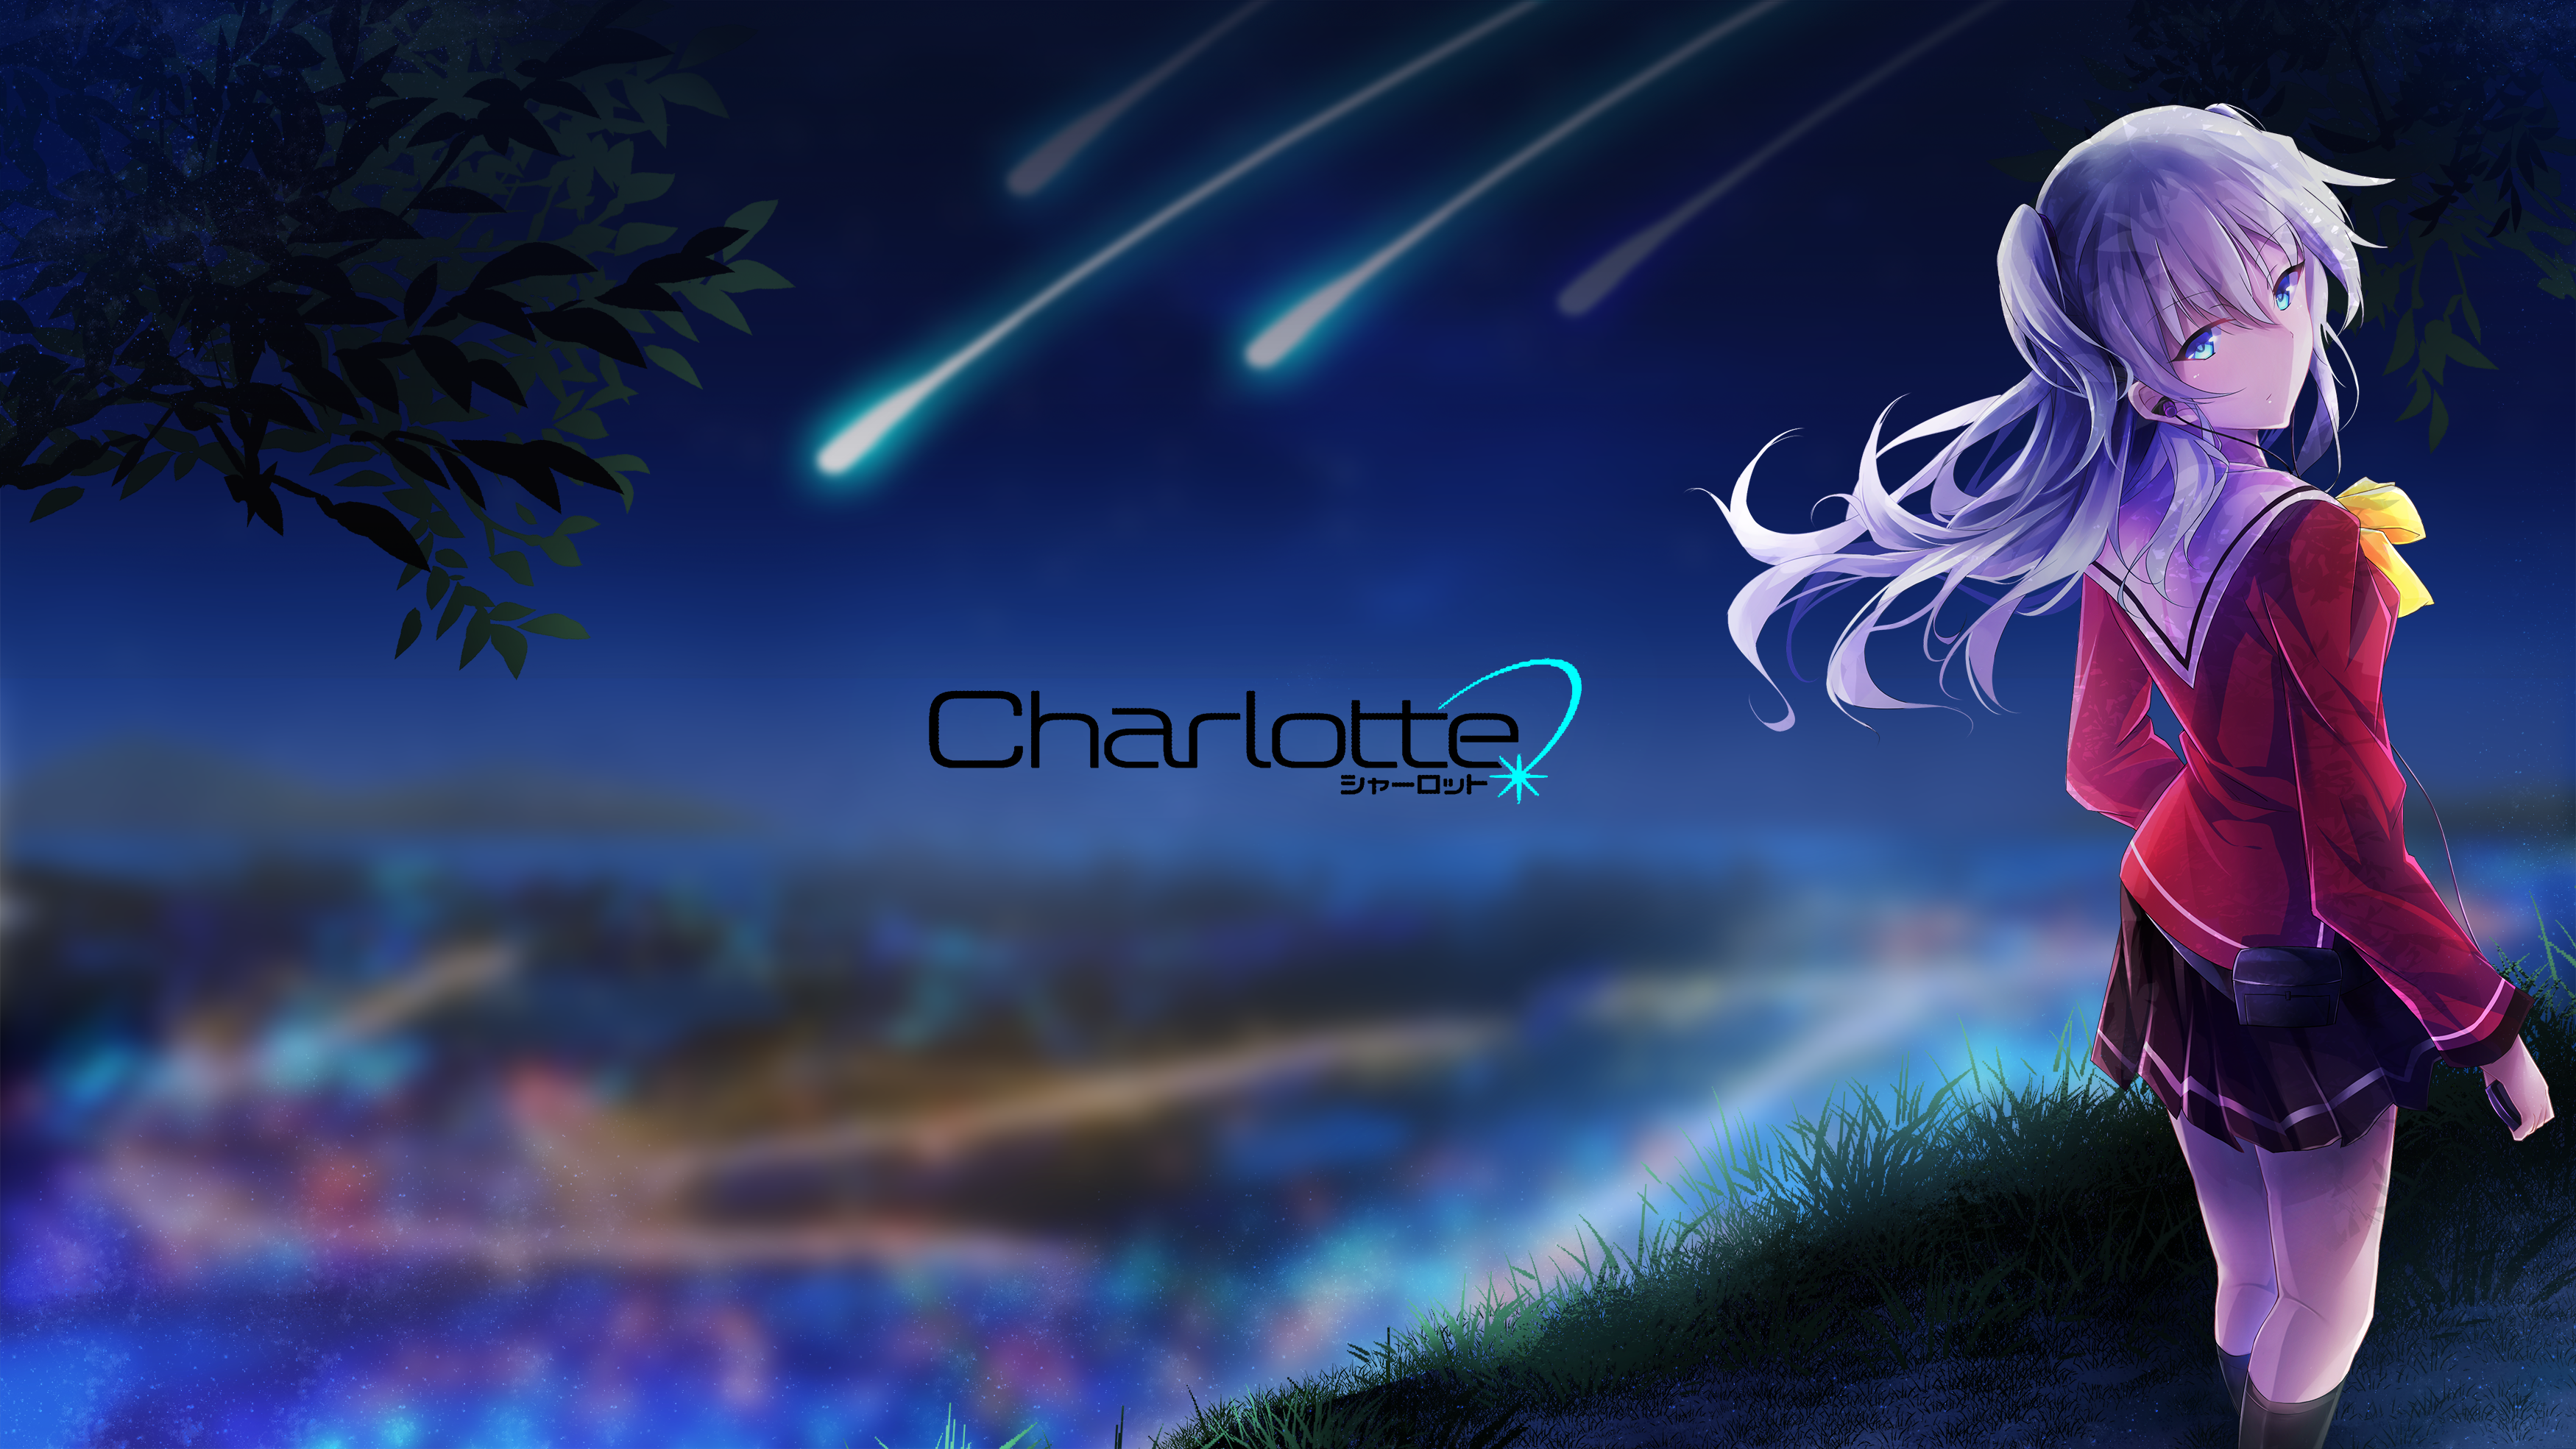 1920x1080) Charlotte anime. Charlotte anime, Charlotte wallpaper